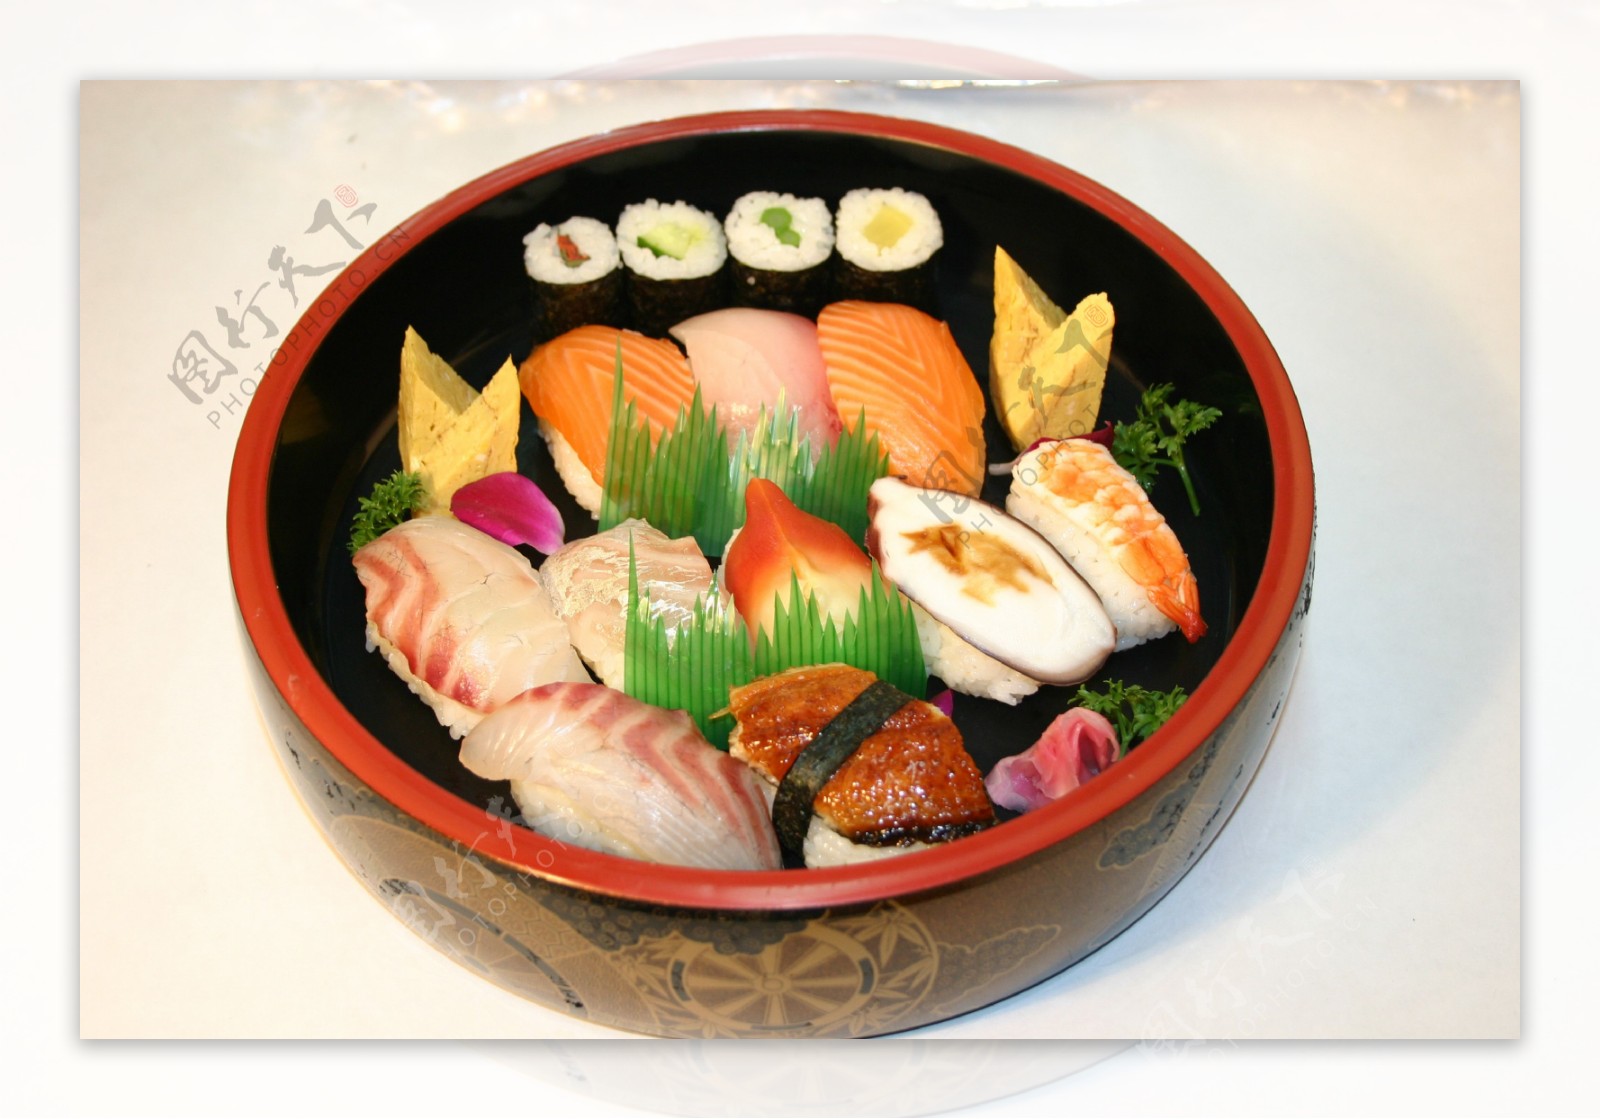 日料寿司拼盘图片